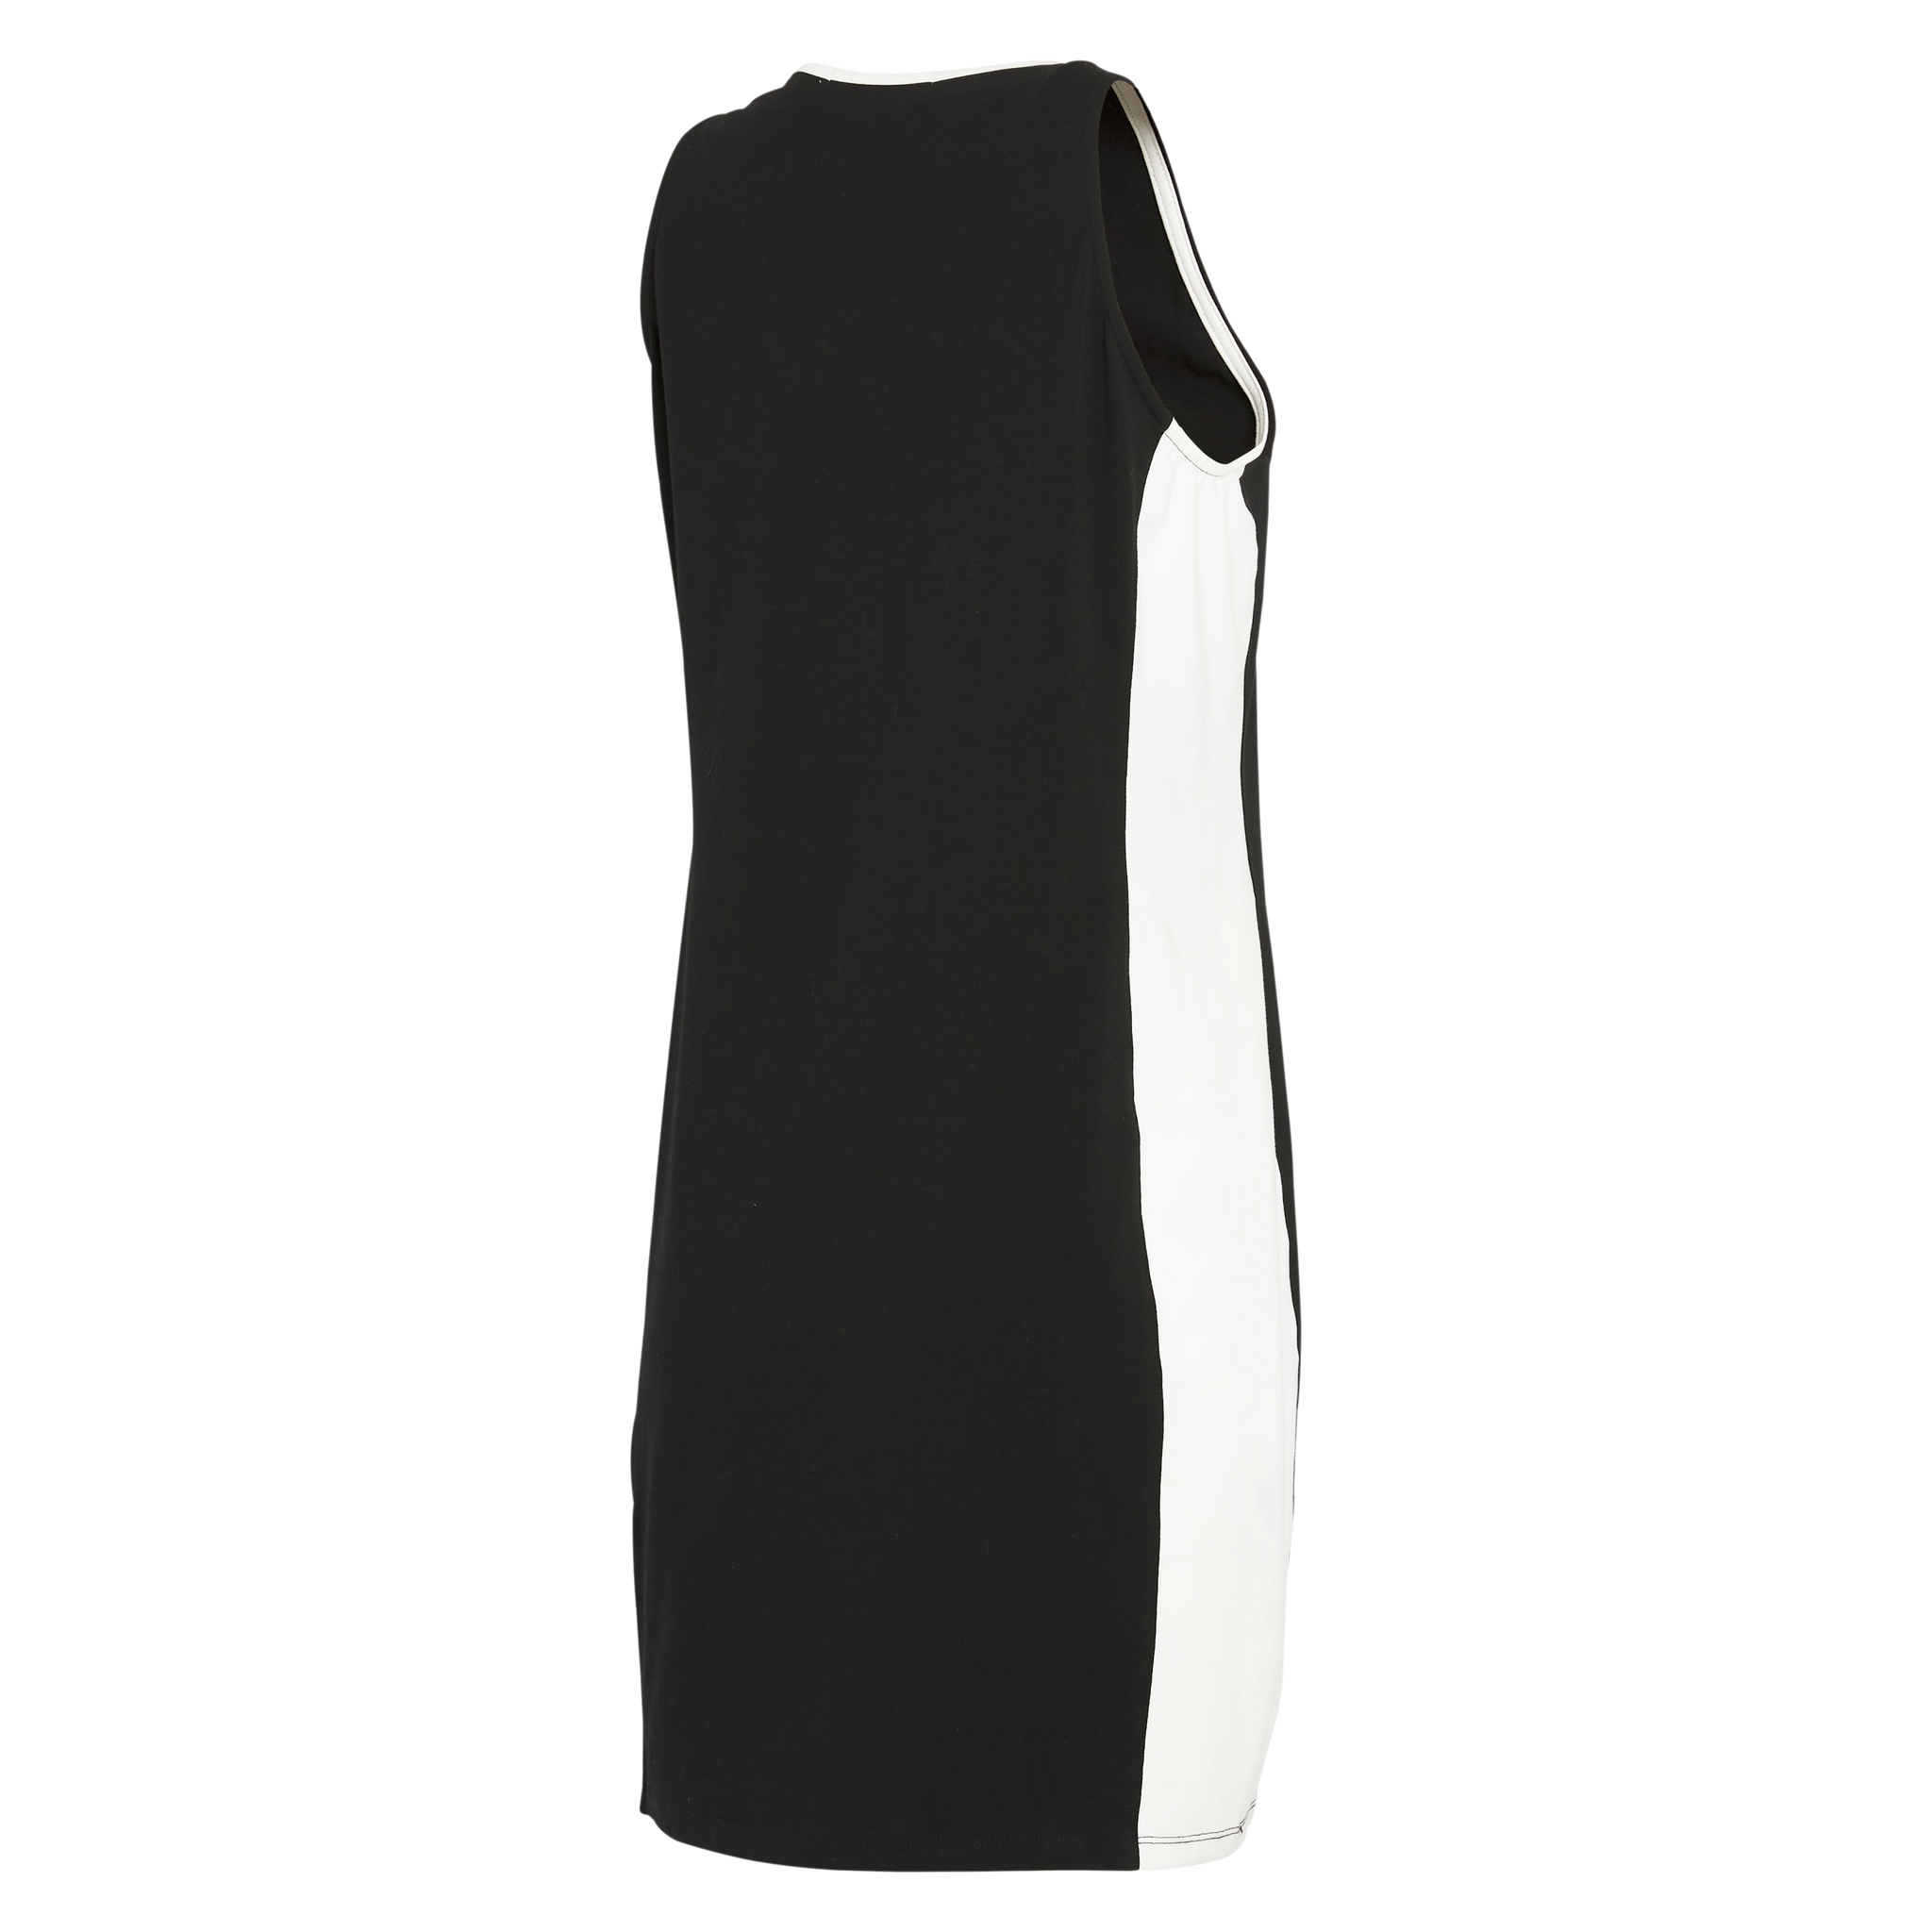 Angel City FC x Wear by Erin Andrews Women's Colorblock Tank Dress